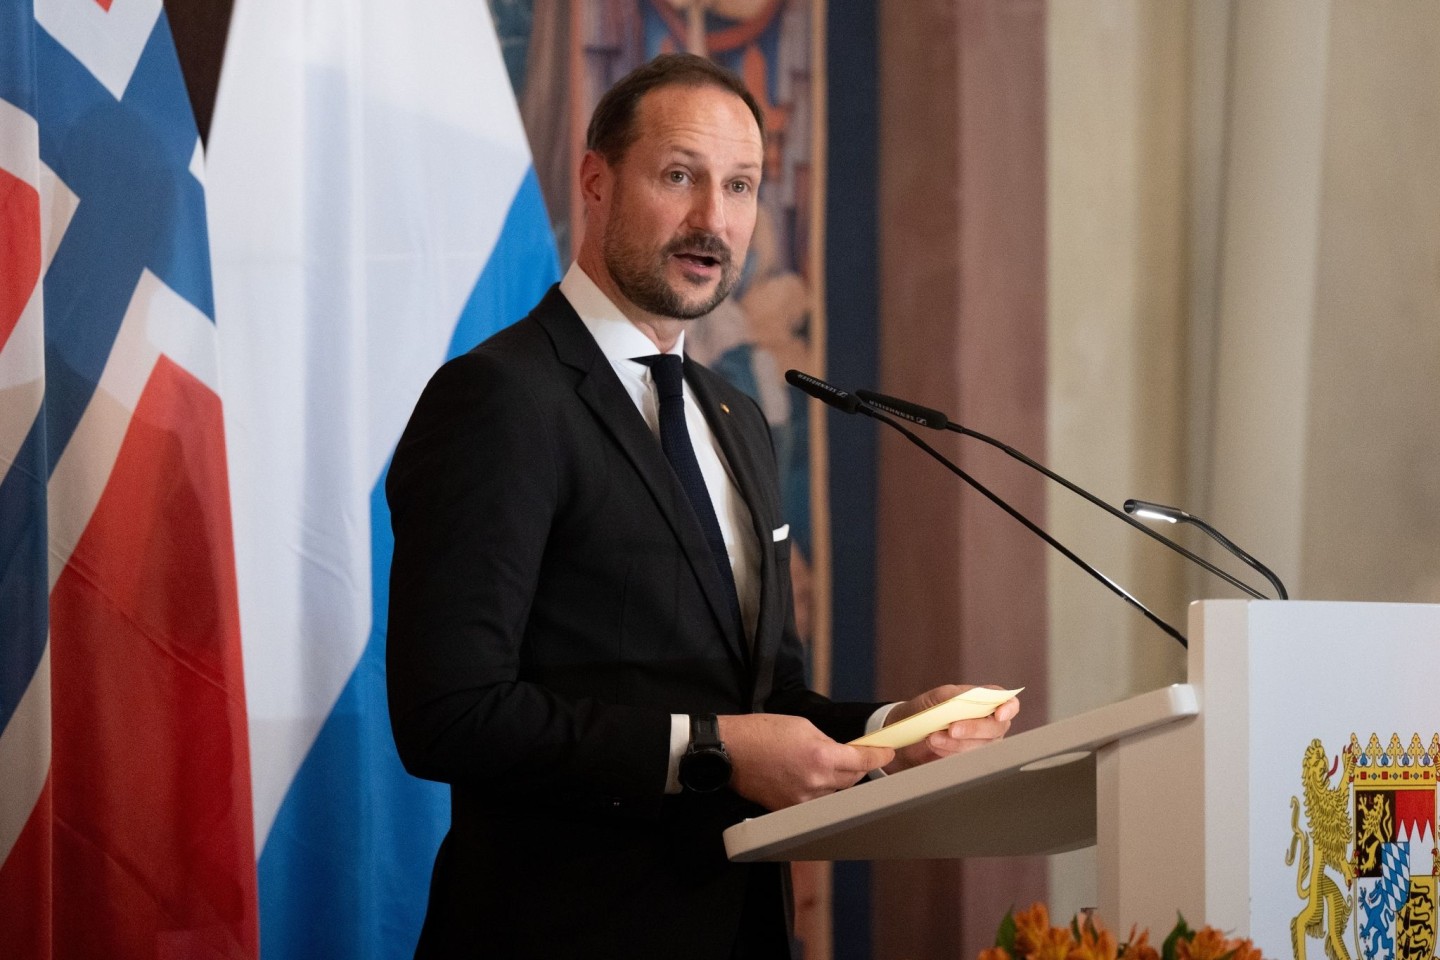 Kronprinz Haakon spricht in der Münchner Residenz beim Empfang der bayerischen Staatsregierung.